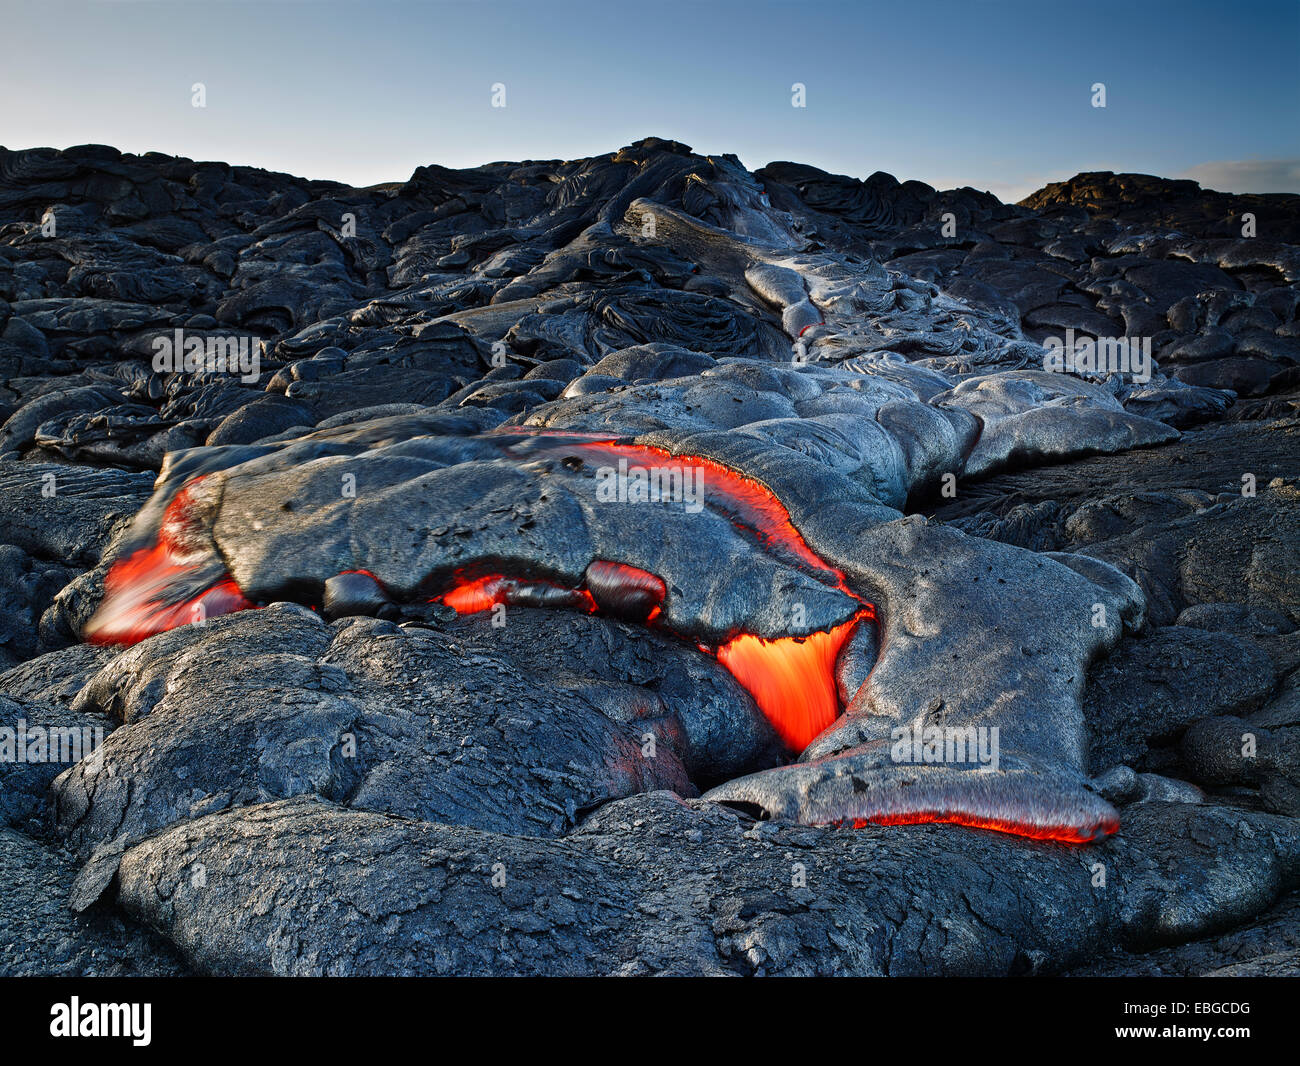 Puʻu ʻŌʻō o Puu Oo vulcano, eruzione vulcanica, lava, red hot lava, Hawaiʻi-Volcanoes-Nationalpark, USA, Hawaii Foto Stock